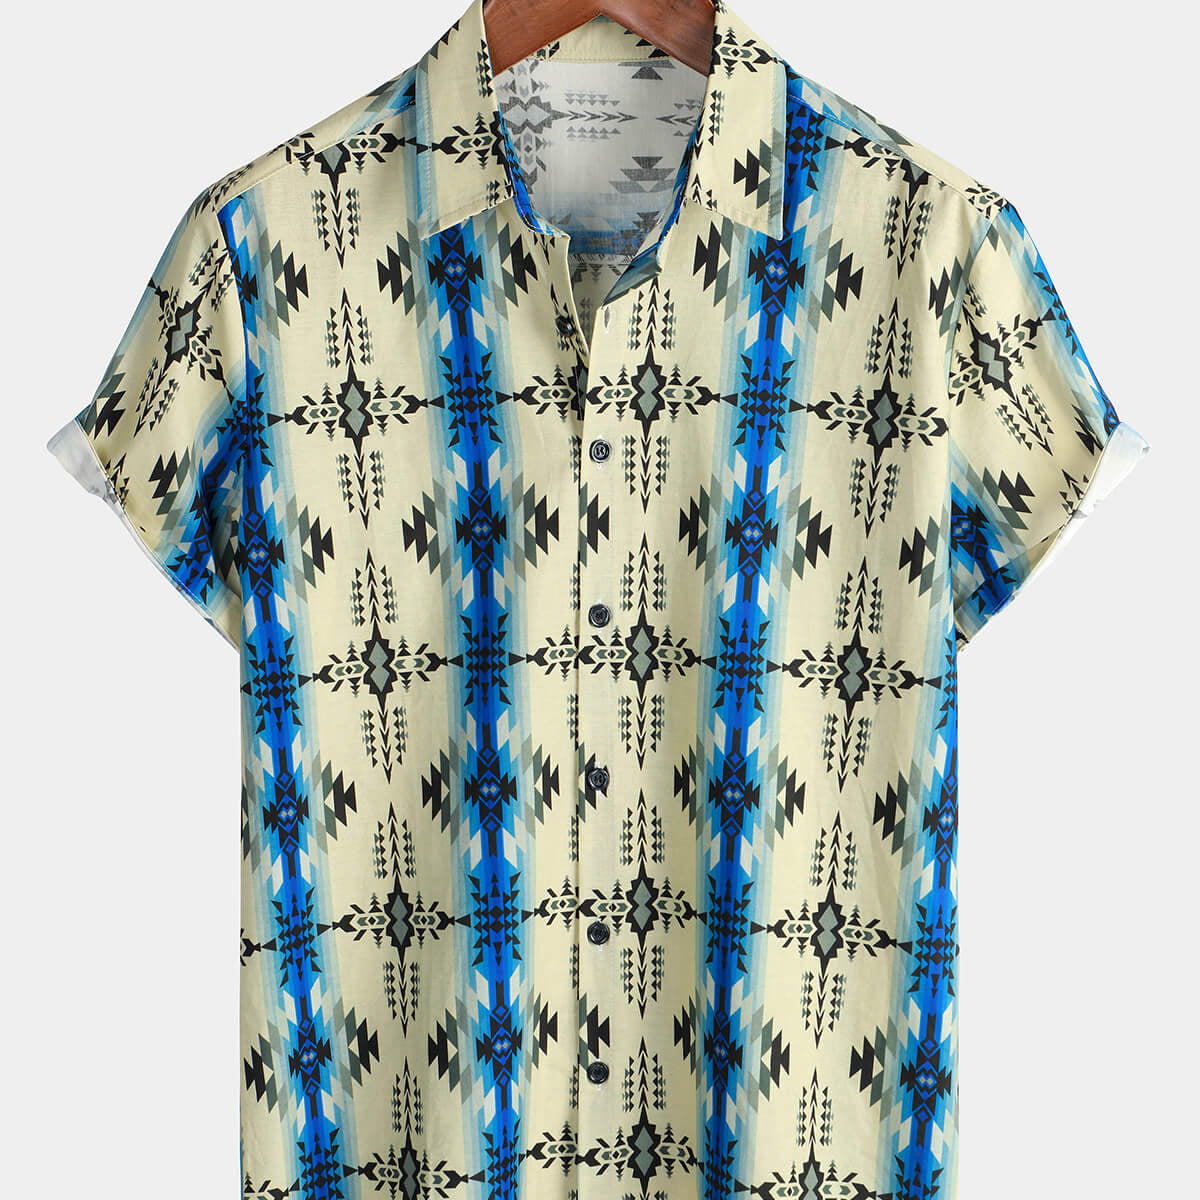 Men's Vintage Short Sleeve 70s Retro Aztec Print Button Up Shirt